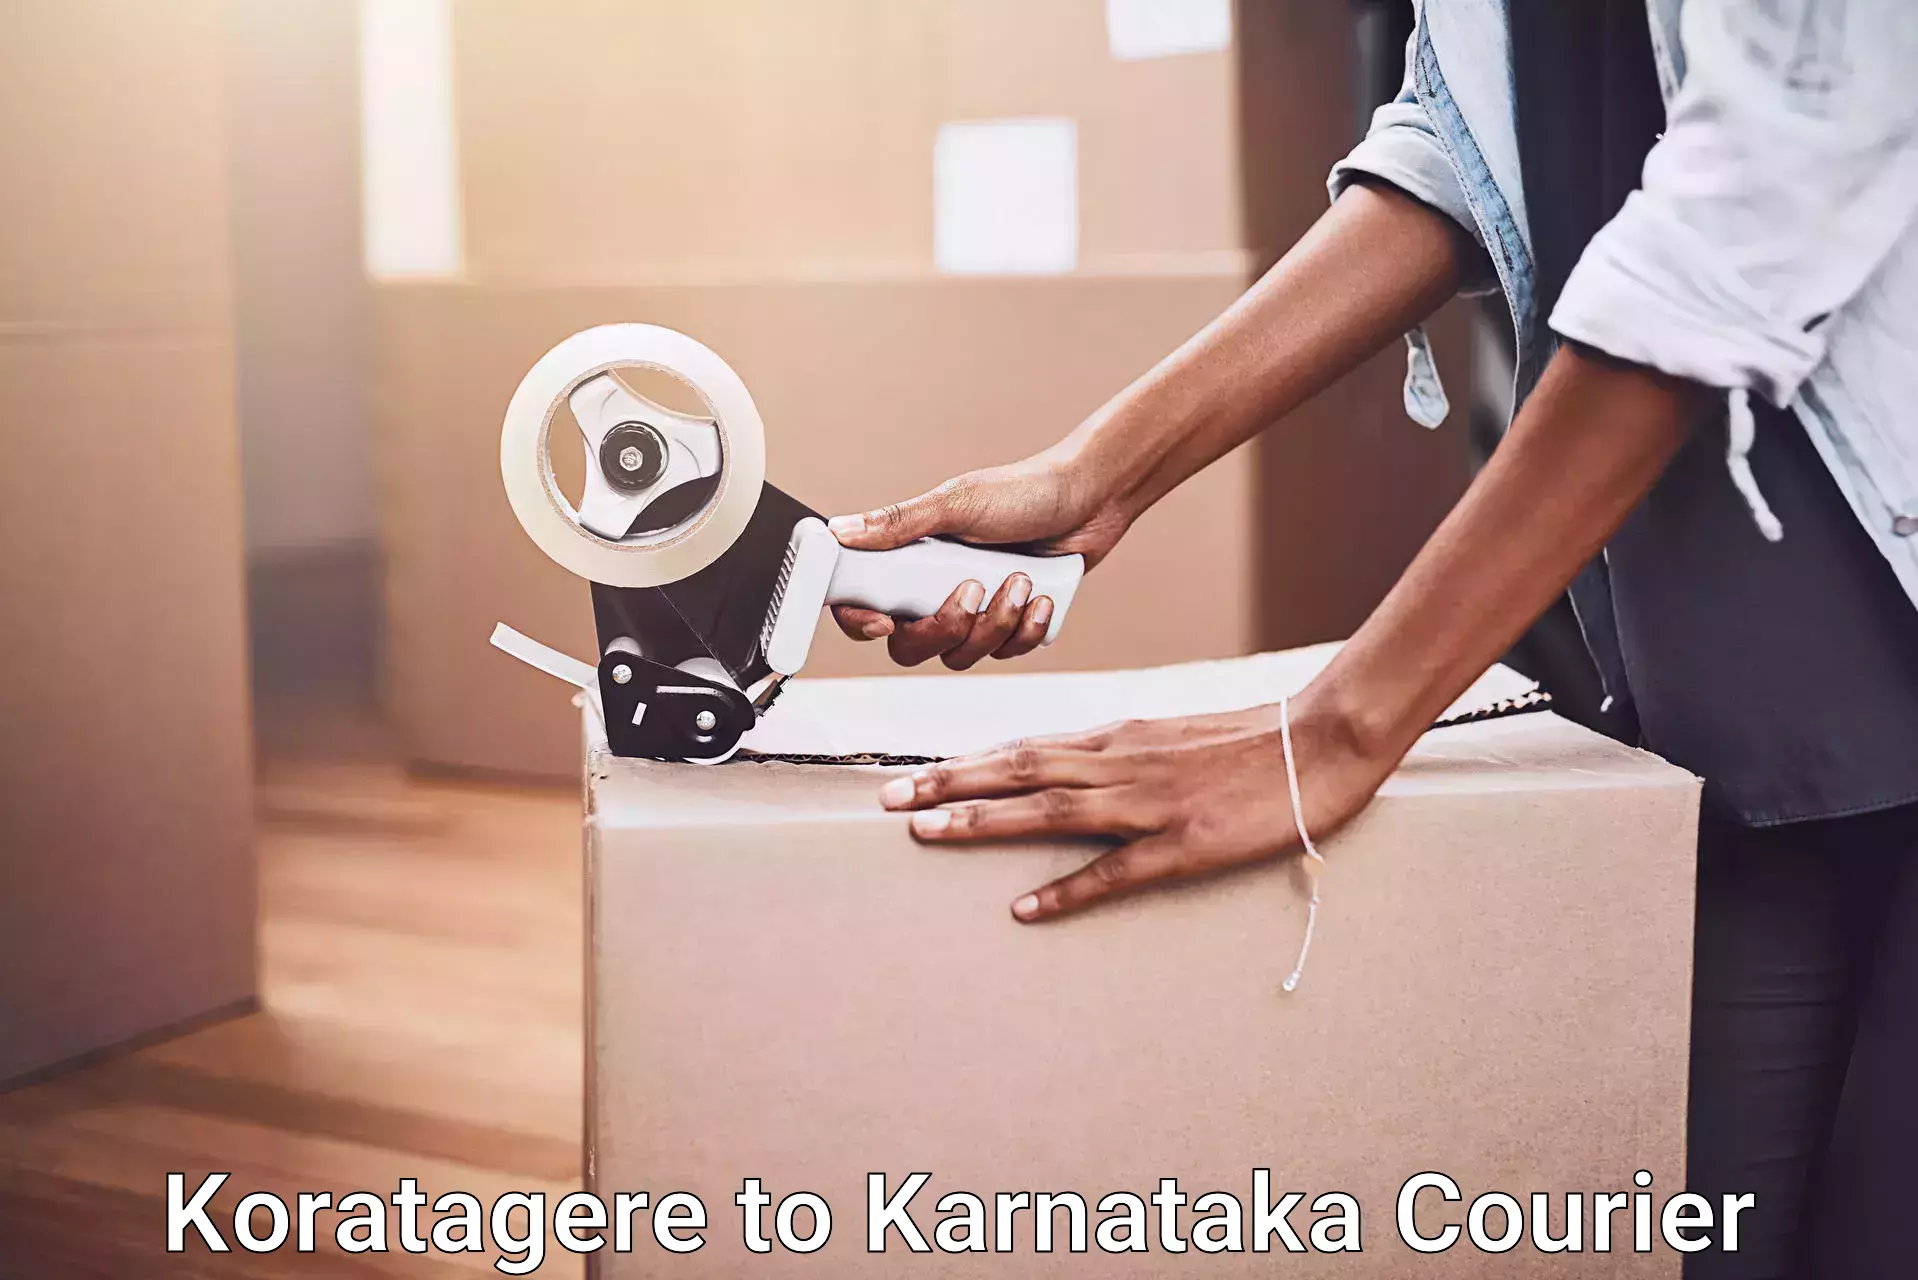 Moving and handling services Koratagere to Yenepoya Mangalore